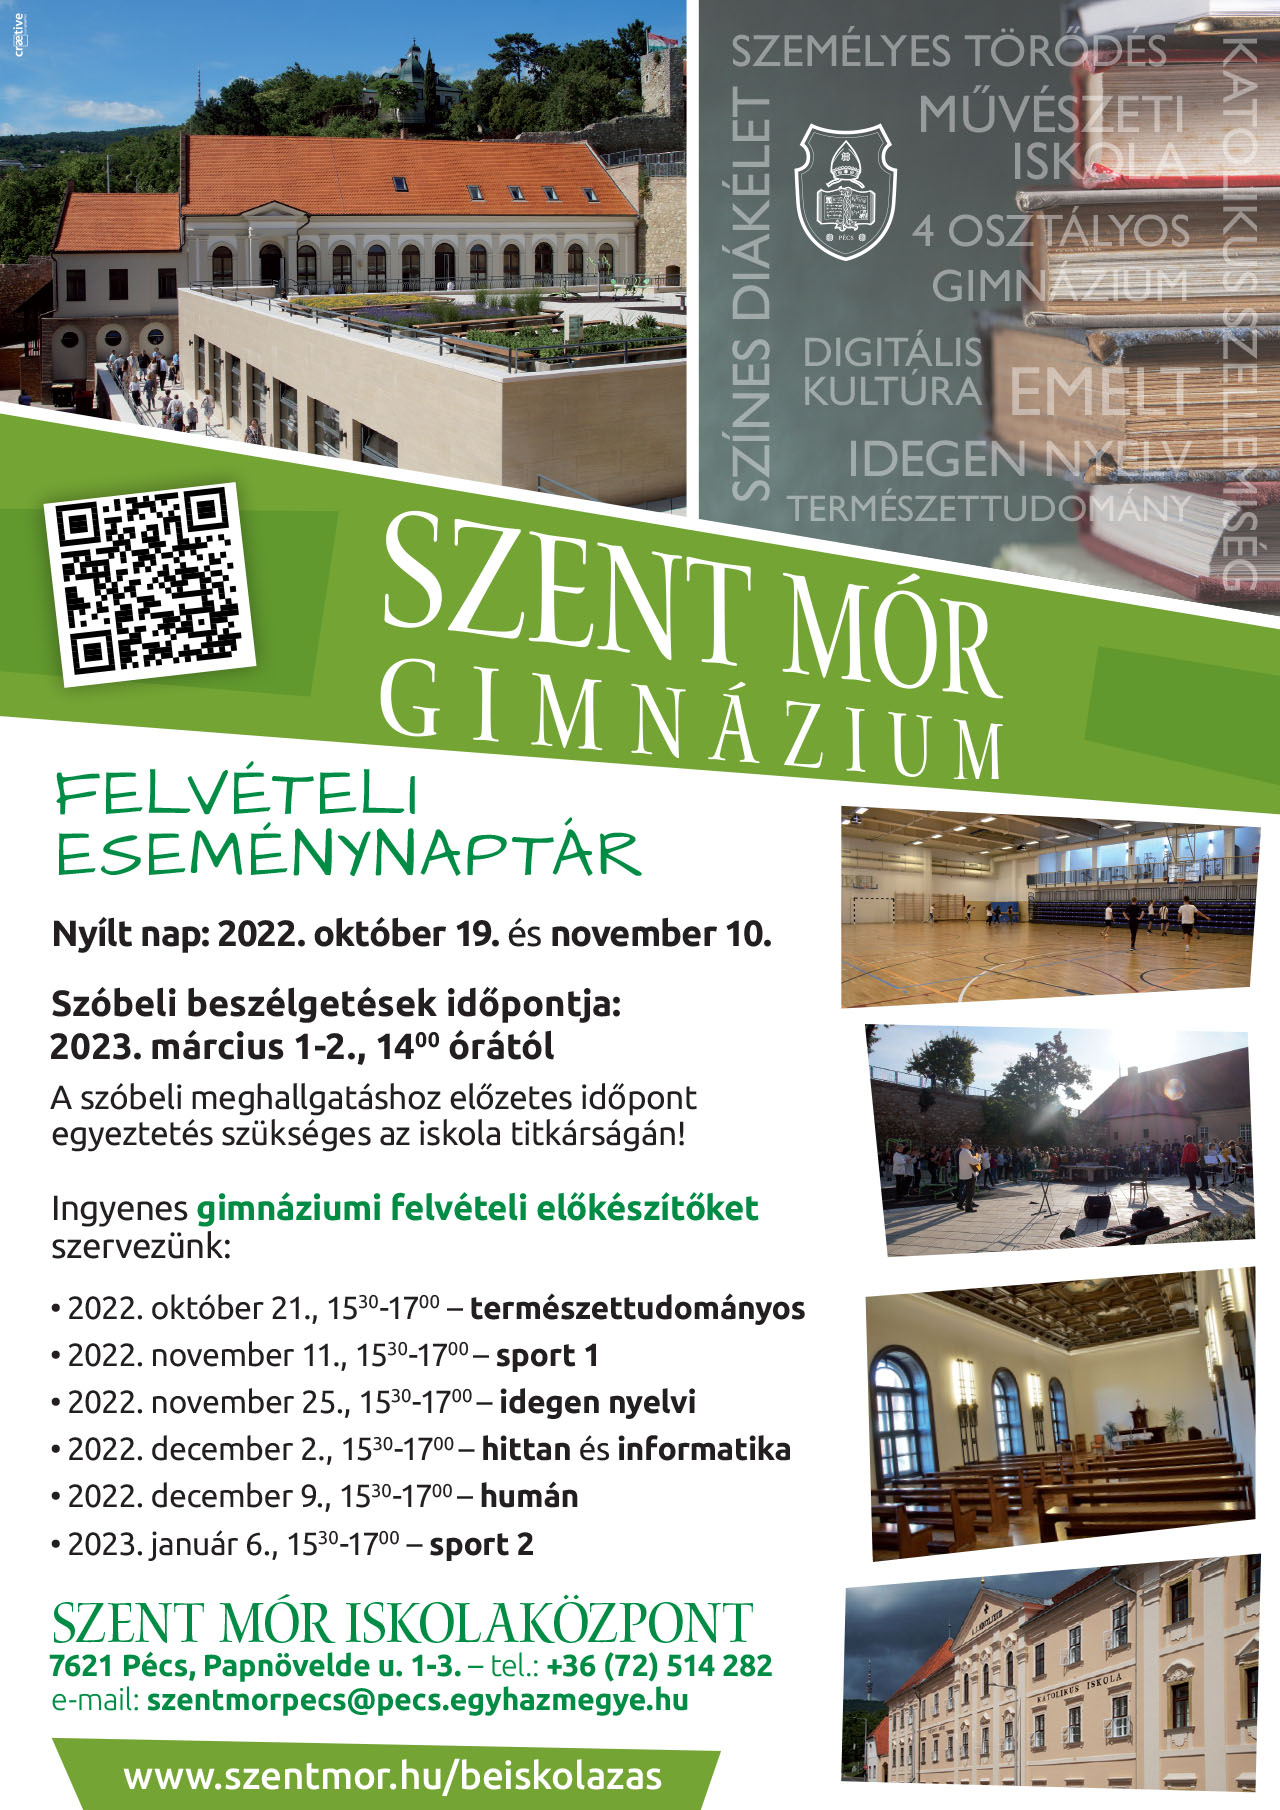 Szent Mór Gimnázium nyílt nap 2022